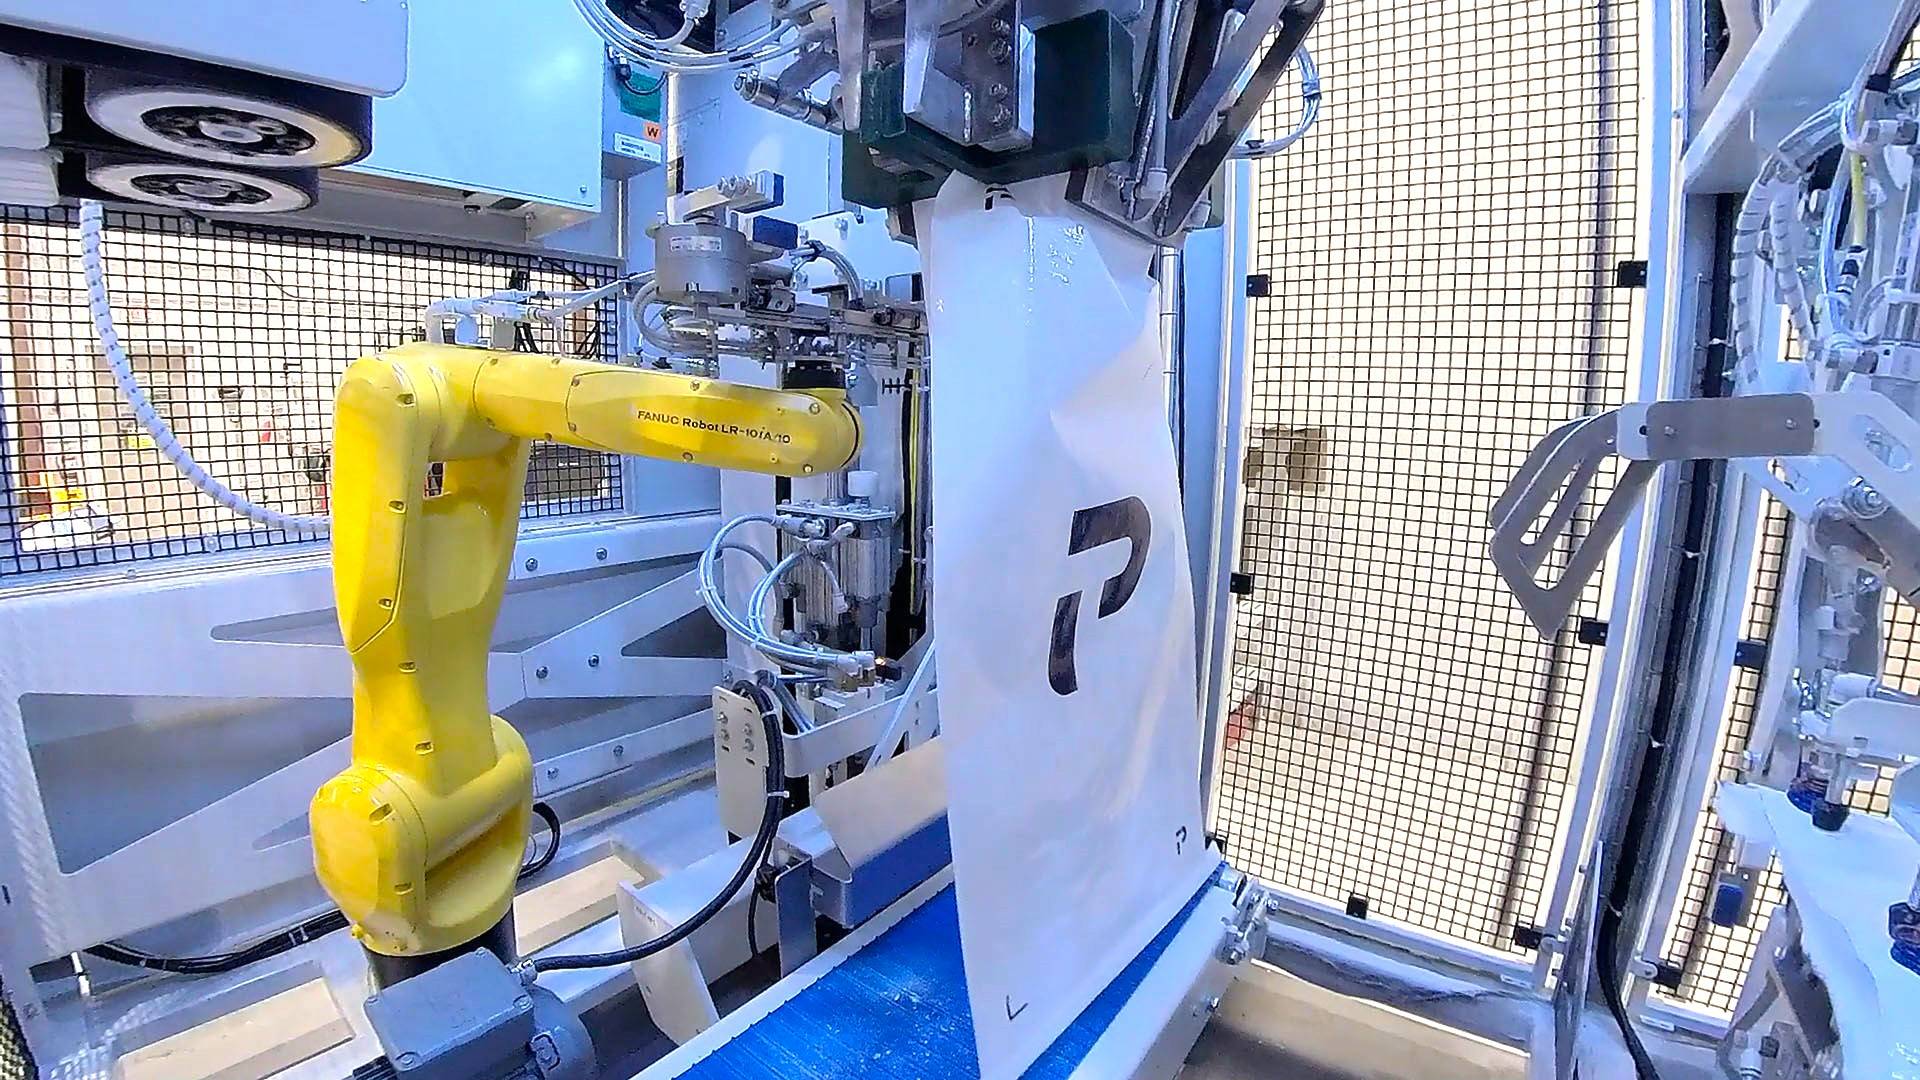 Robot inside the CHRONOS OMR bagging machine